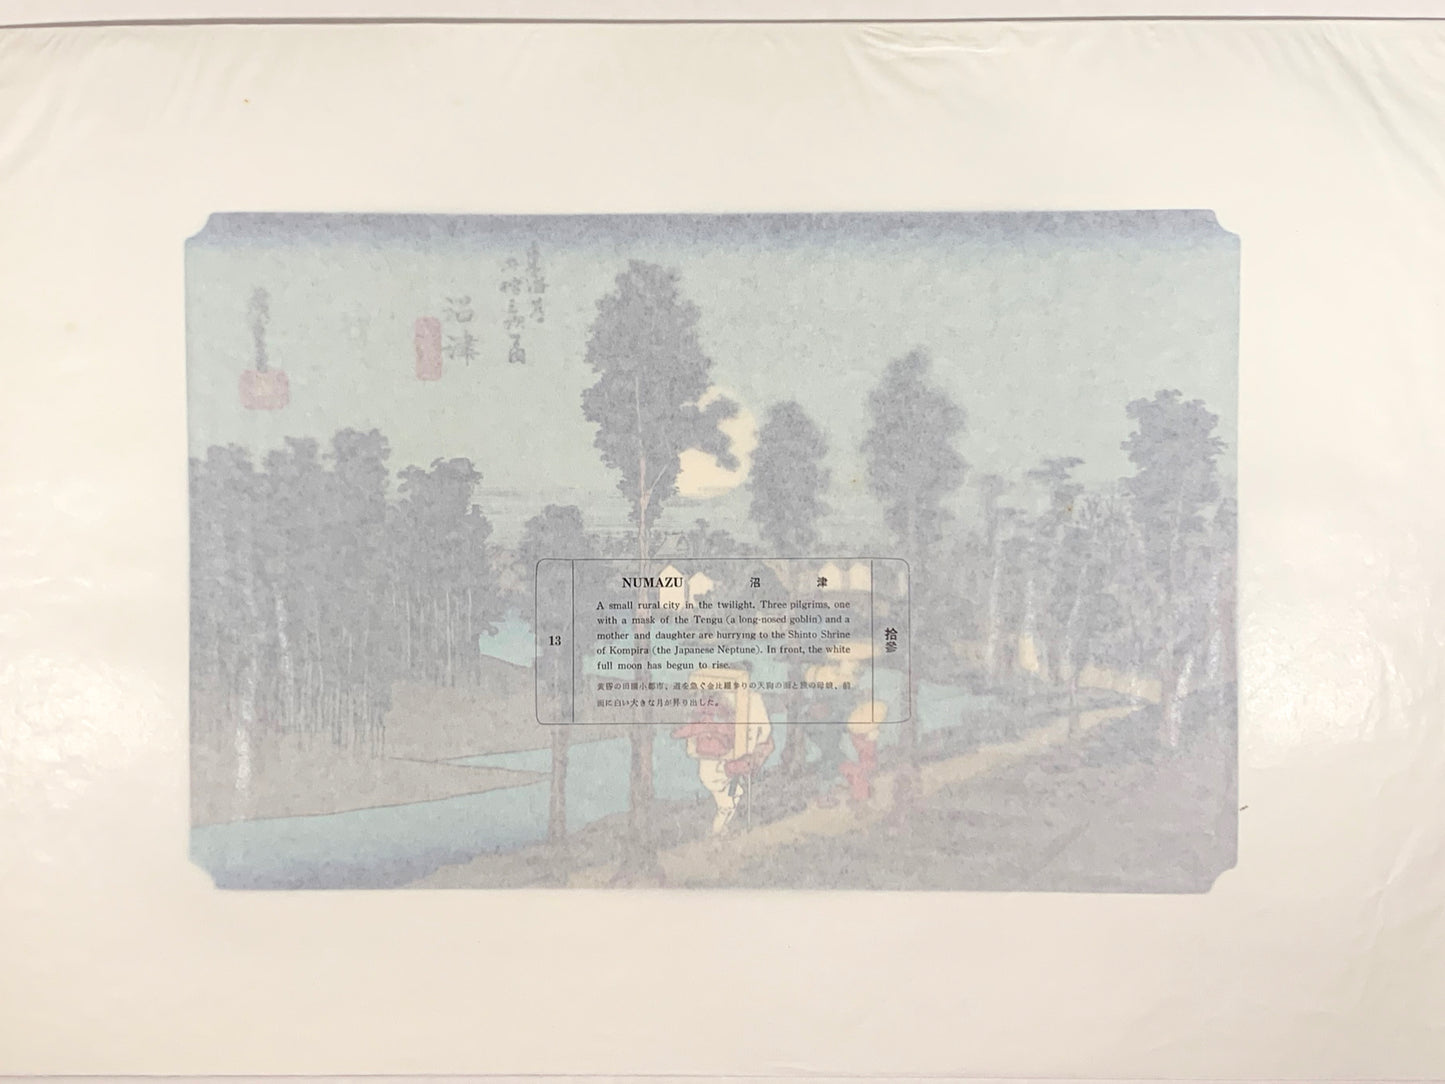 estampe japonaise de Hiroshige, des voyageurs sur la route du Tokaido arrivent au village de Nemazu, sous une nuit de pleine lune, texte